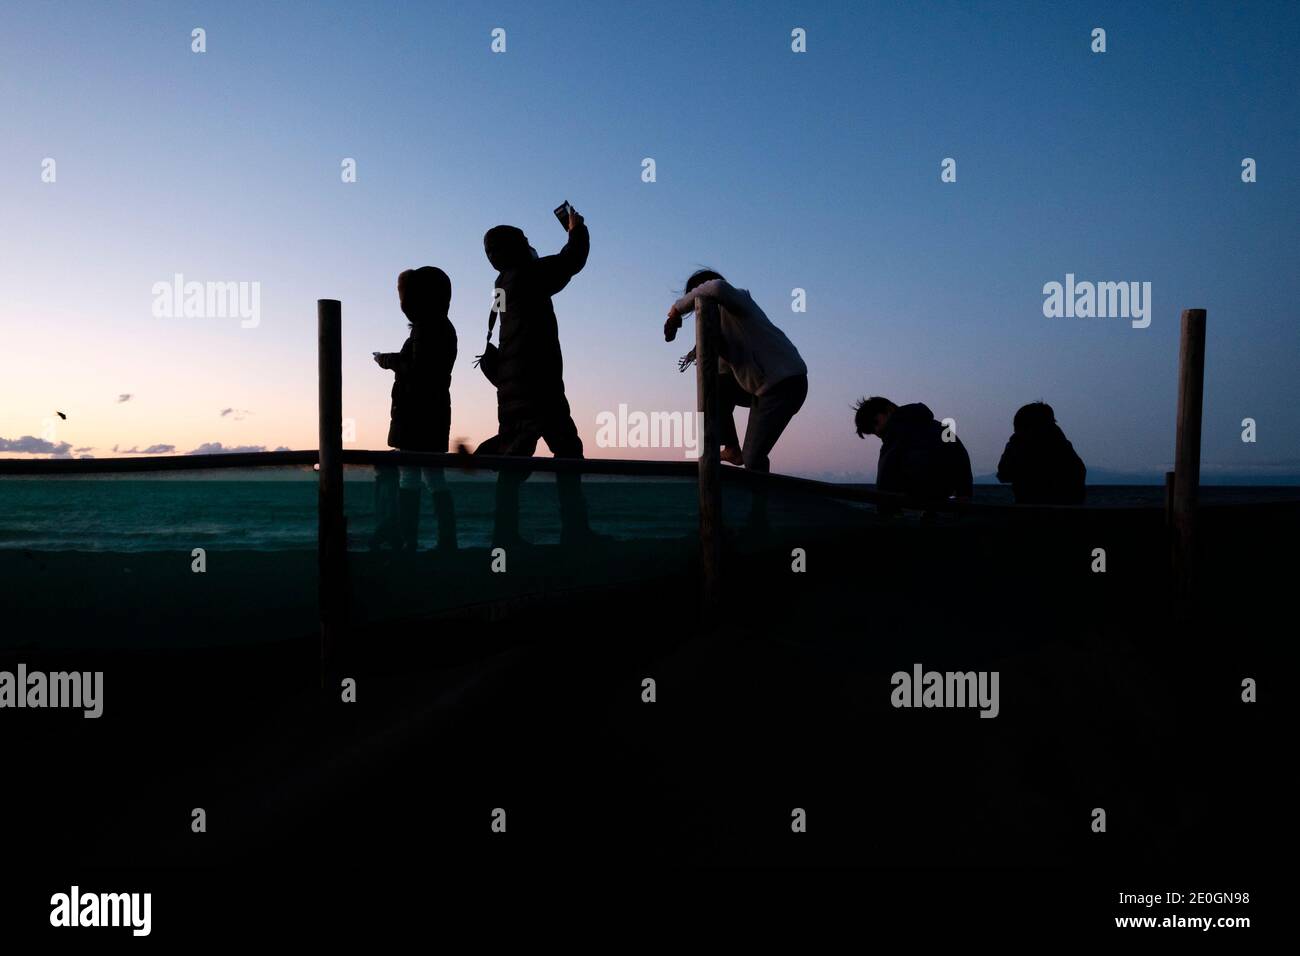 1ER JANVIER 2021 - les gens regardent le premier lever de soleil de la nouvelle année, connu sous le nom de hatsuhinode, sur une plage à Fujisawa, au Japon. Crédit : Ben Weller/AFLO/Alay Live News Banque D'Images